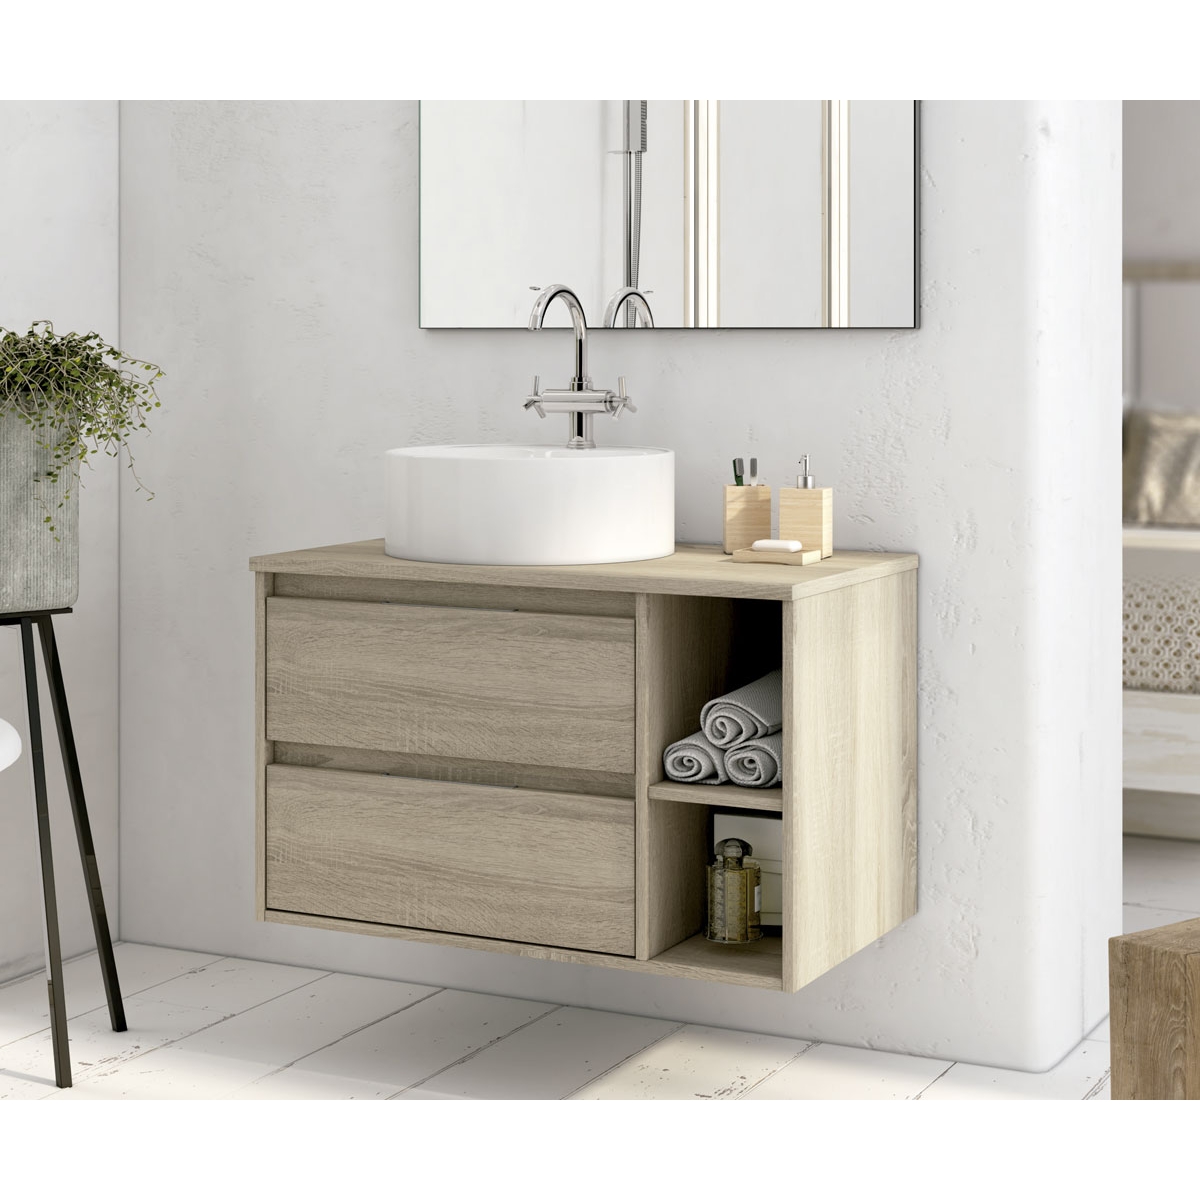 https://www.paratureforma.com/55066-product_default/mueble-de-bano-suspendido-dover-de-80-cm-de-ancho-color-cambrian-con-lavabo-integrado.jpg